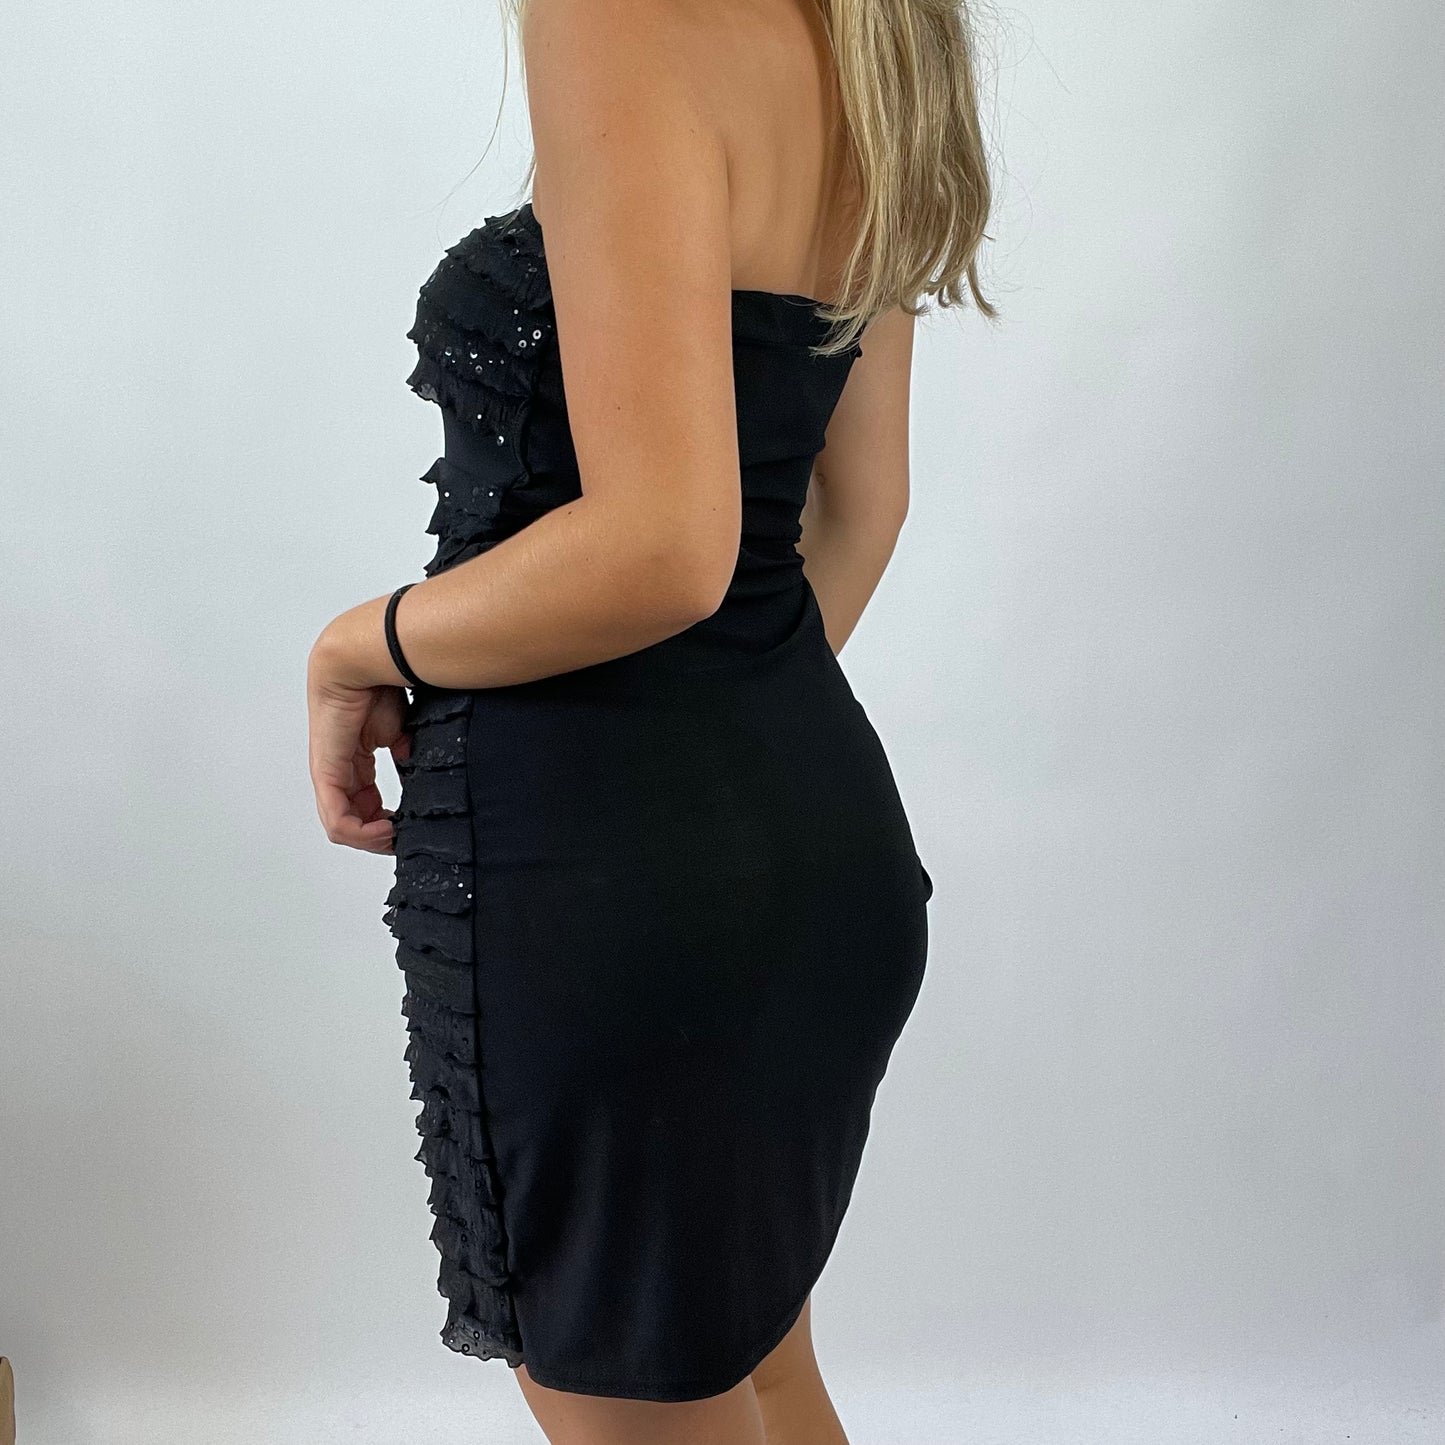 MANHATTAN GIRL DROP | small black ruffle sequin dress